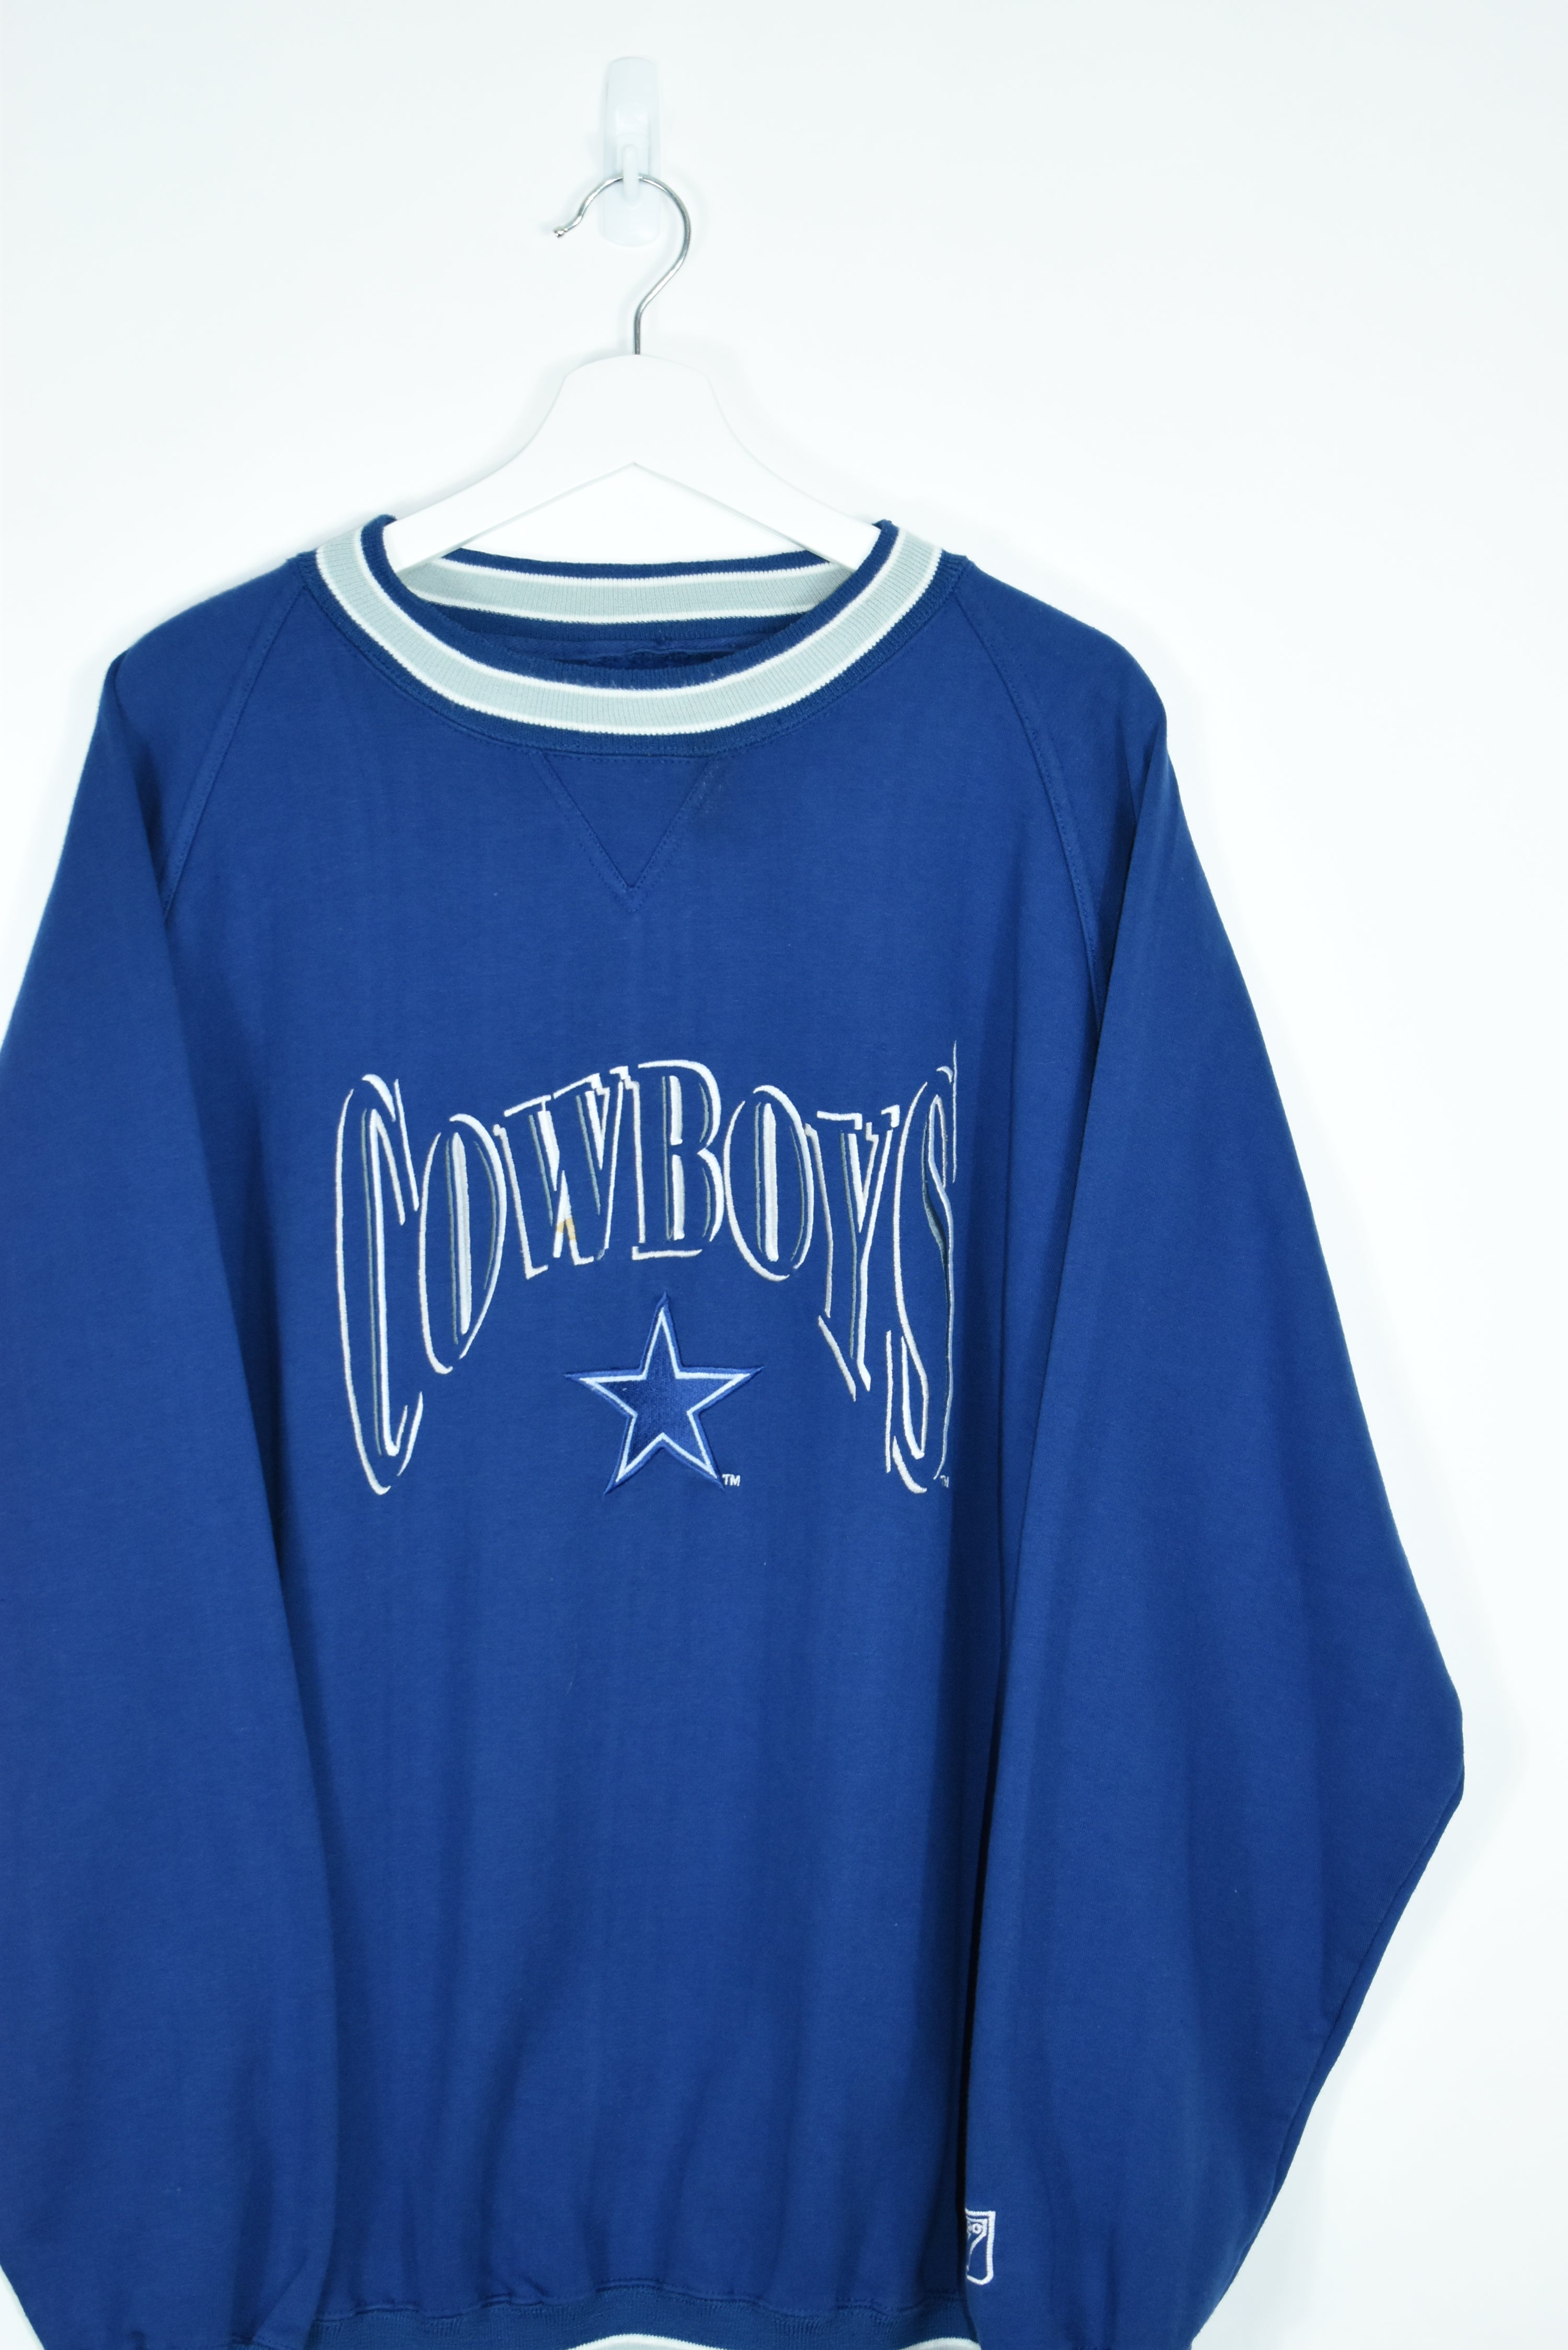 Vintage Dallas Cowboys Embroidery Sweatshirt Xlarge